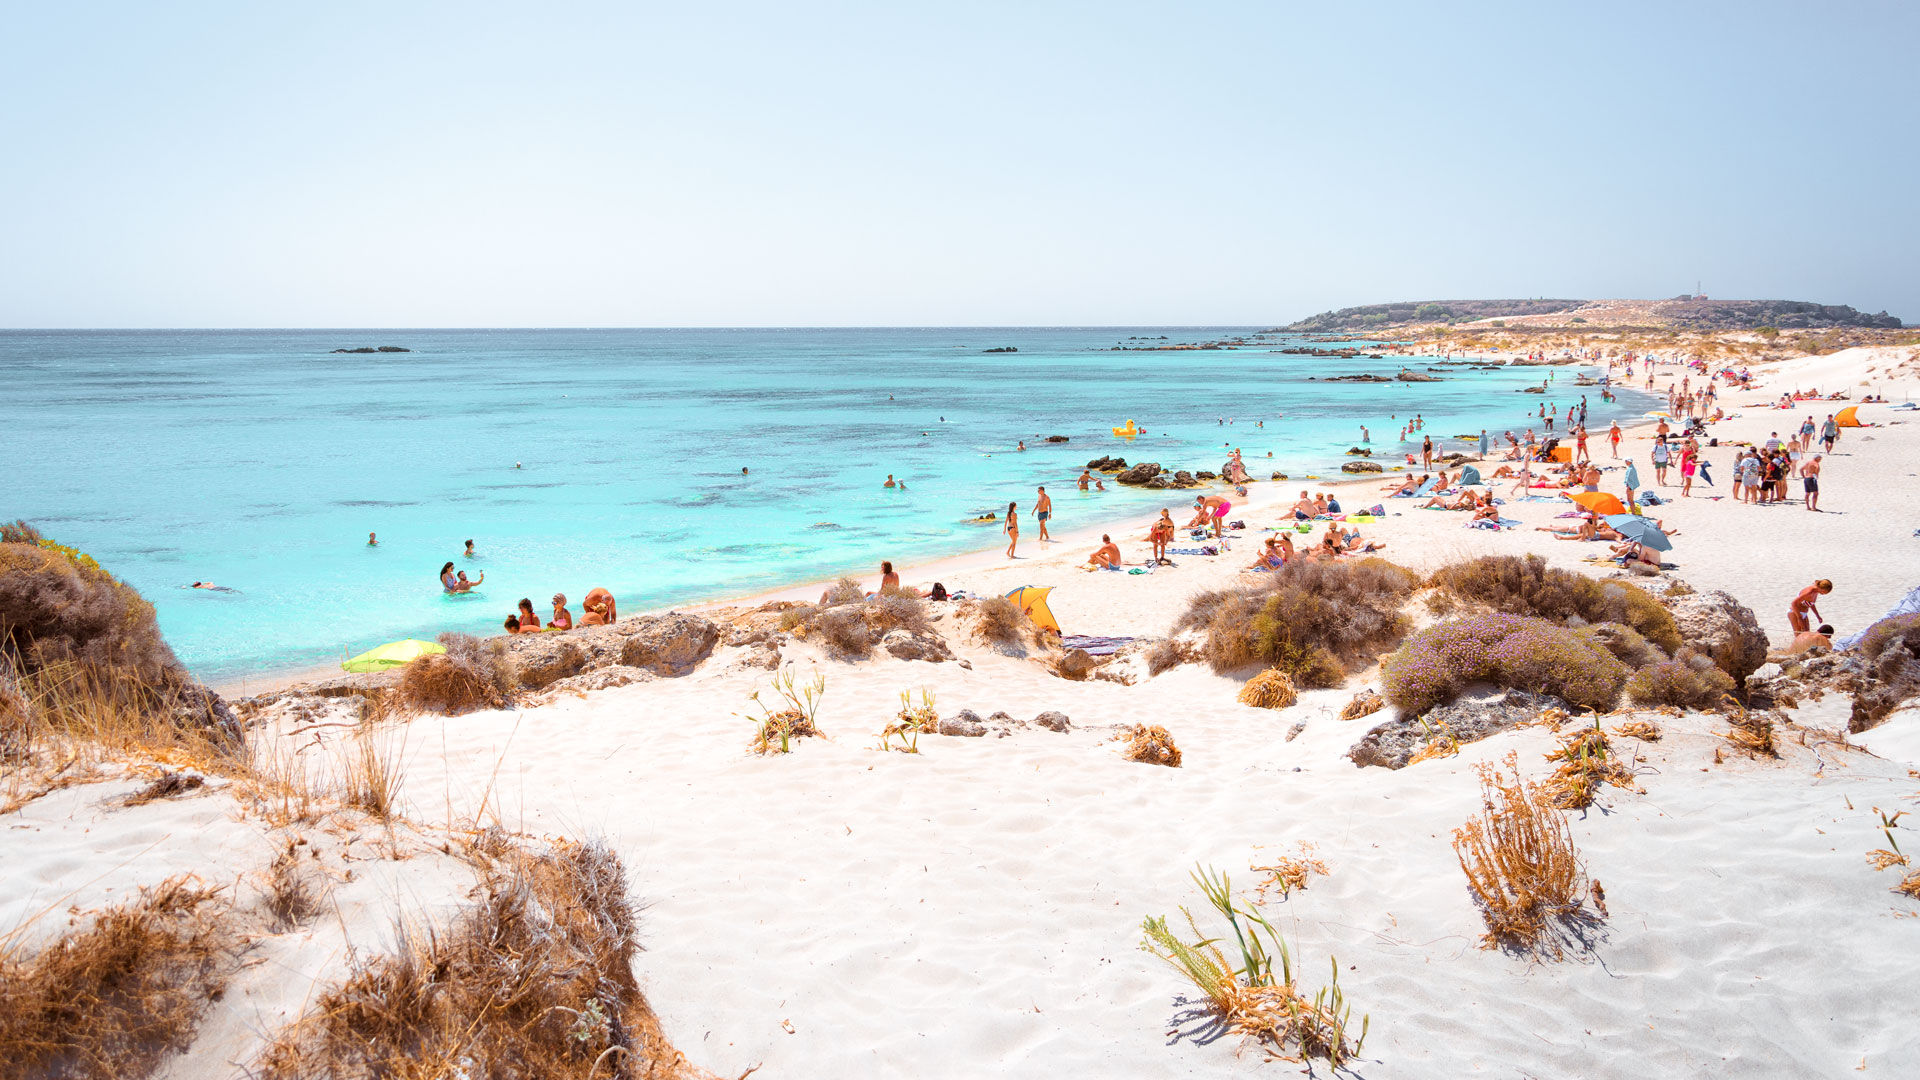 La plage de Simos est un double paradis sur Elafonisos